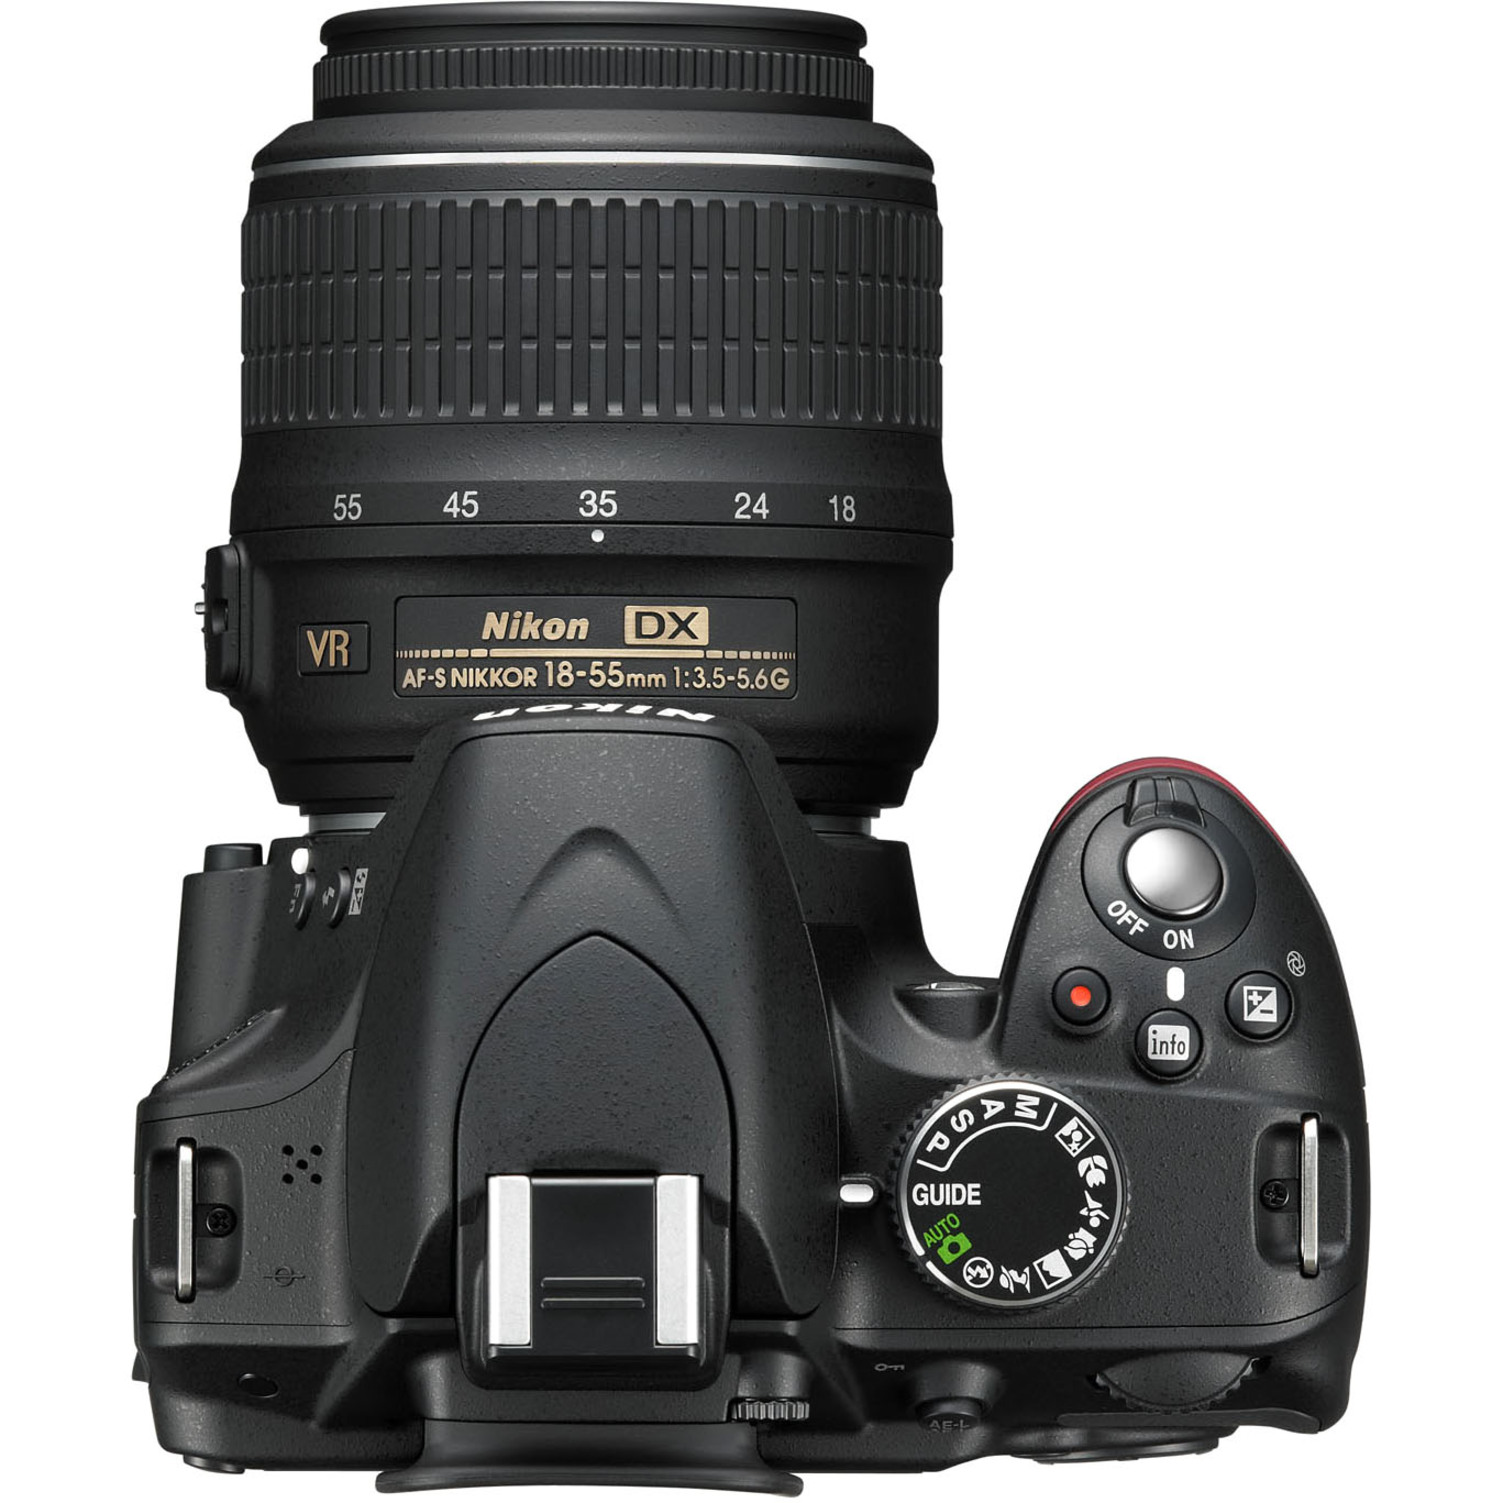 Nikon D3200 24.2 Megapixel Digital SLR Camera with Lens, 0.71", 2.17" (Lens 1), 2.17", 7.87" (Lens 2), Black - image 5 of 6